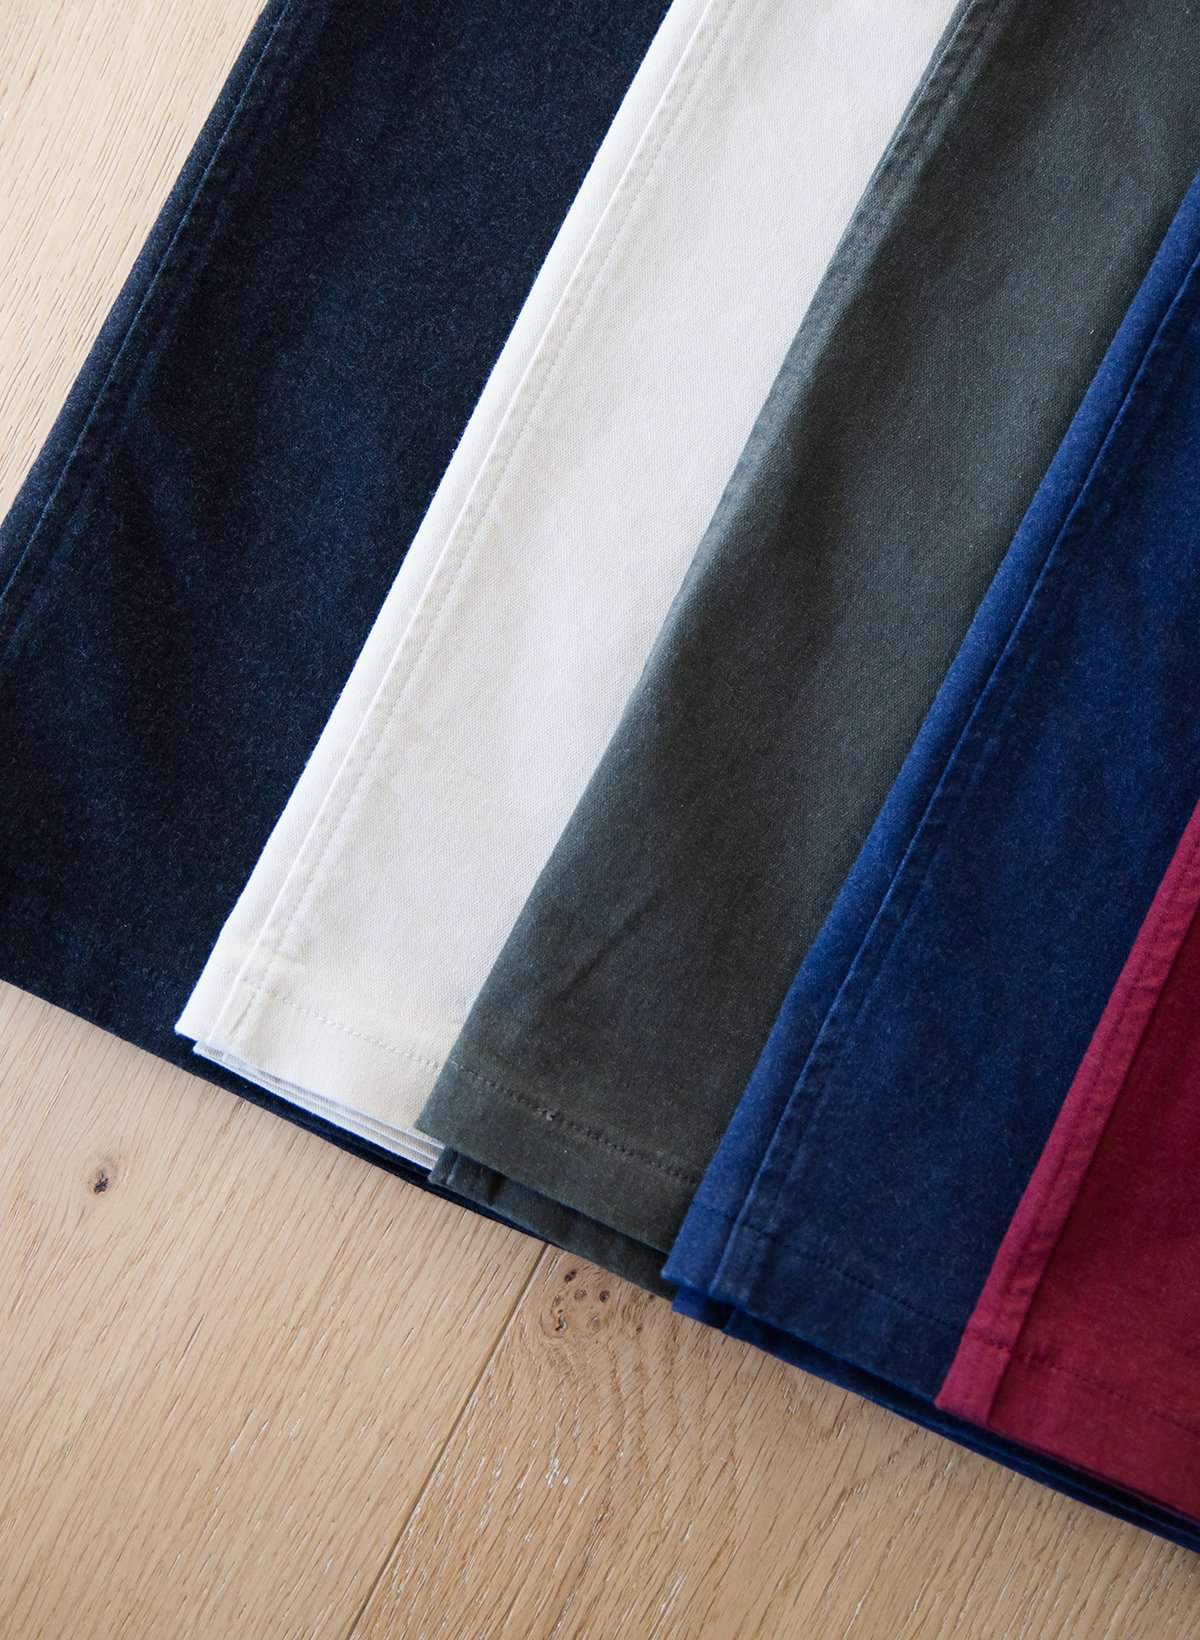 Joey Khaki Stretch Waist Midi Skirt - FINAL SALE Skirts